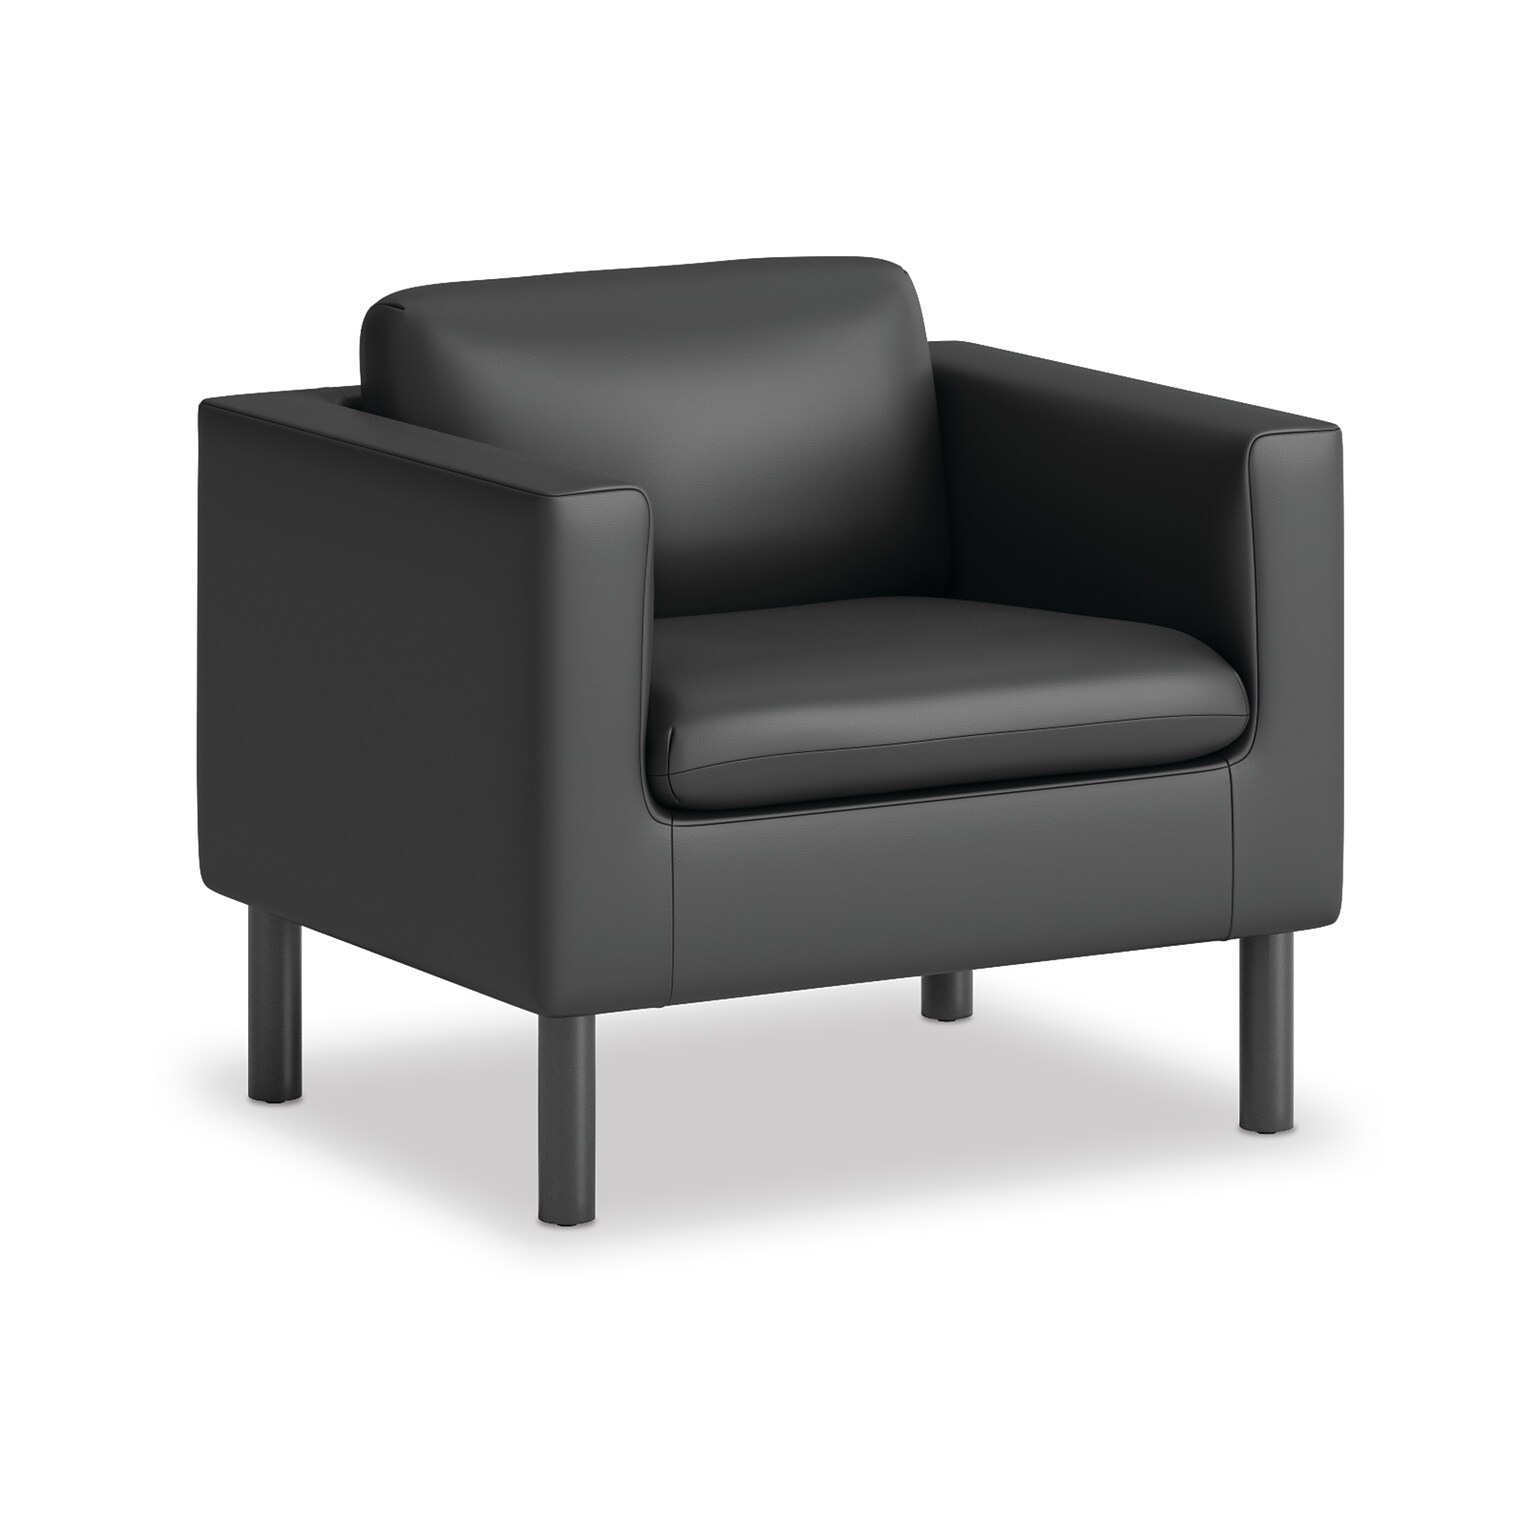 HON Parkwyn Polyurethane Club Chair, Black (HVLVL1.BLK01)